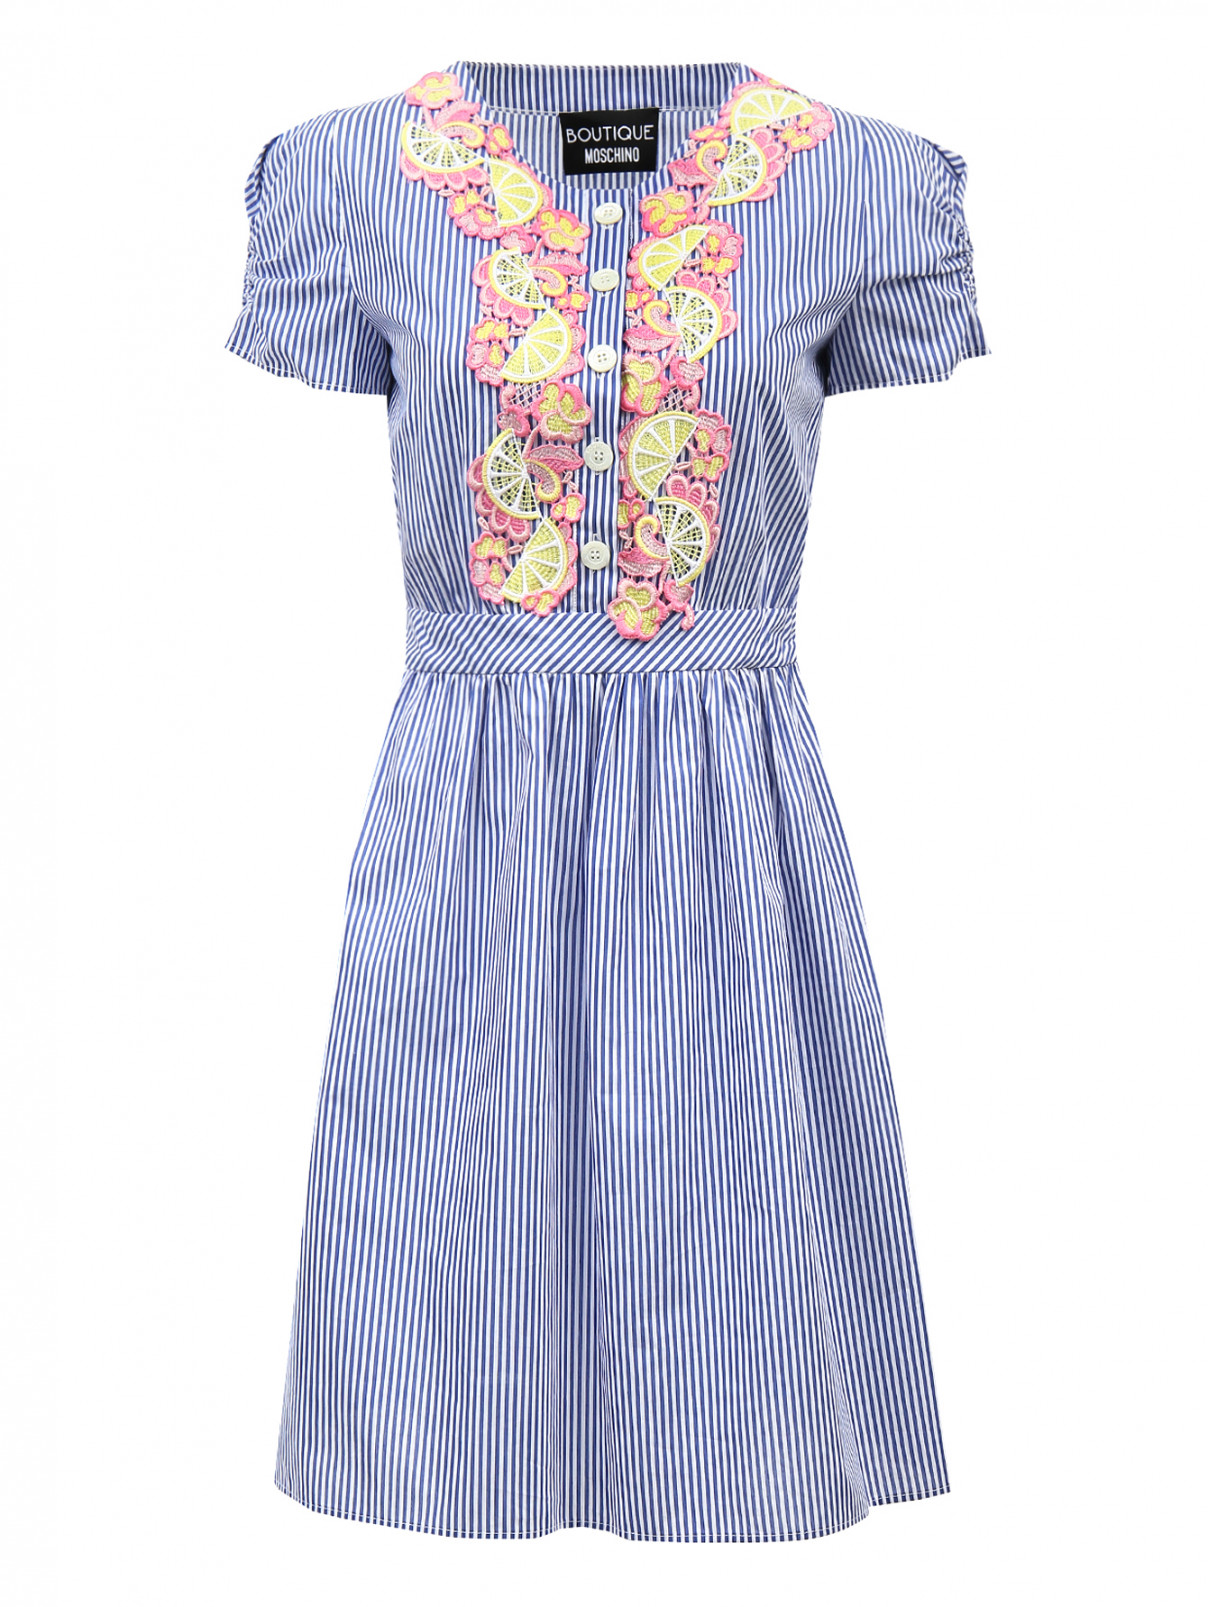 Платье из хлопка и шелка с рукавами фонариками и аппликацией на груди Moschino Boutique  –  Общий вид  – Цвет:  Узор